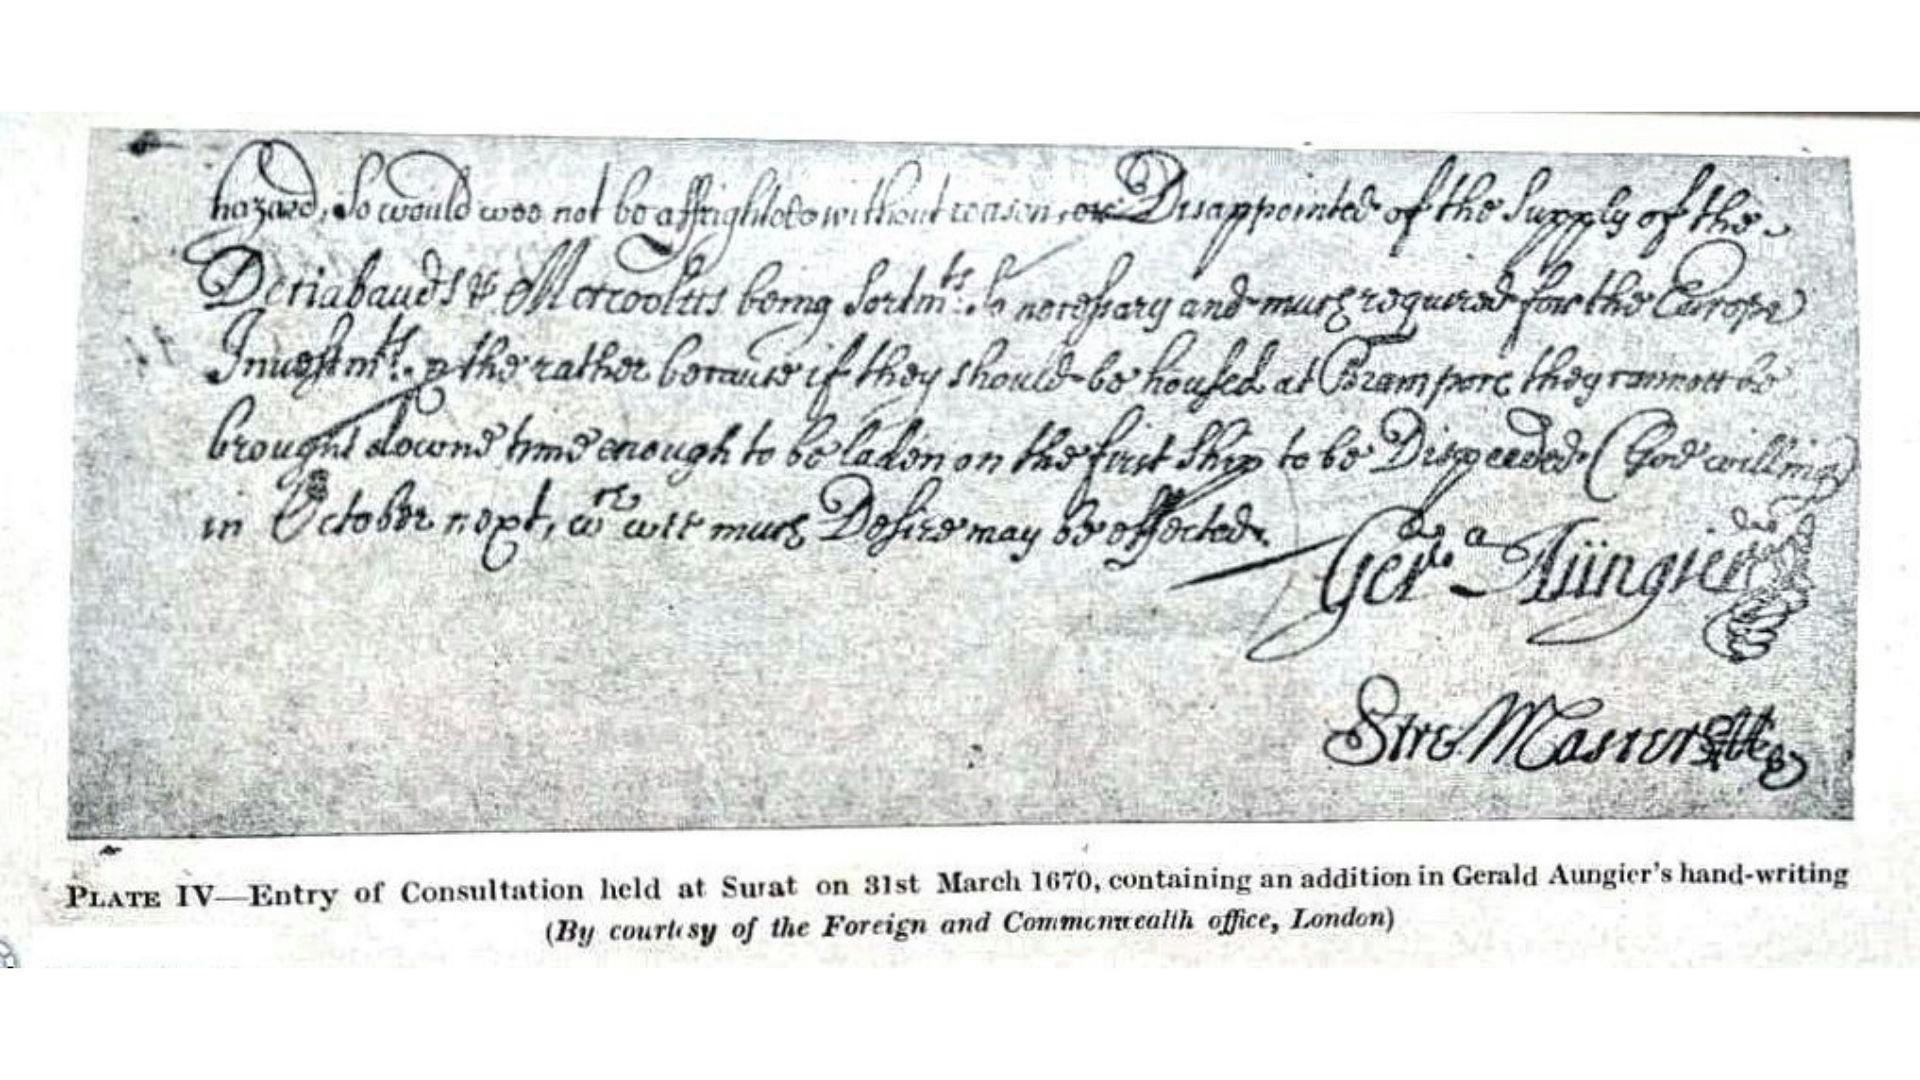 Gerald Aungier's letter to Surat Council (31st March, 1670)